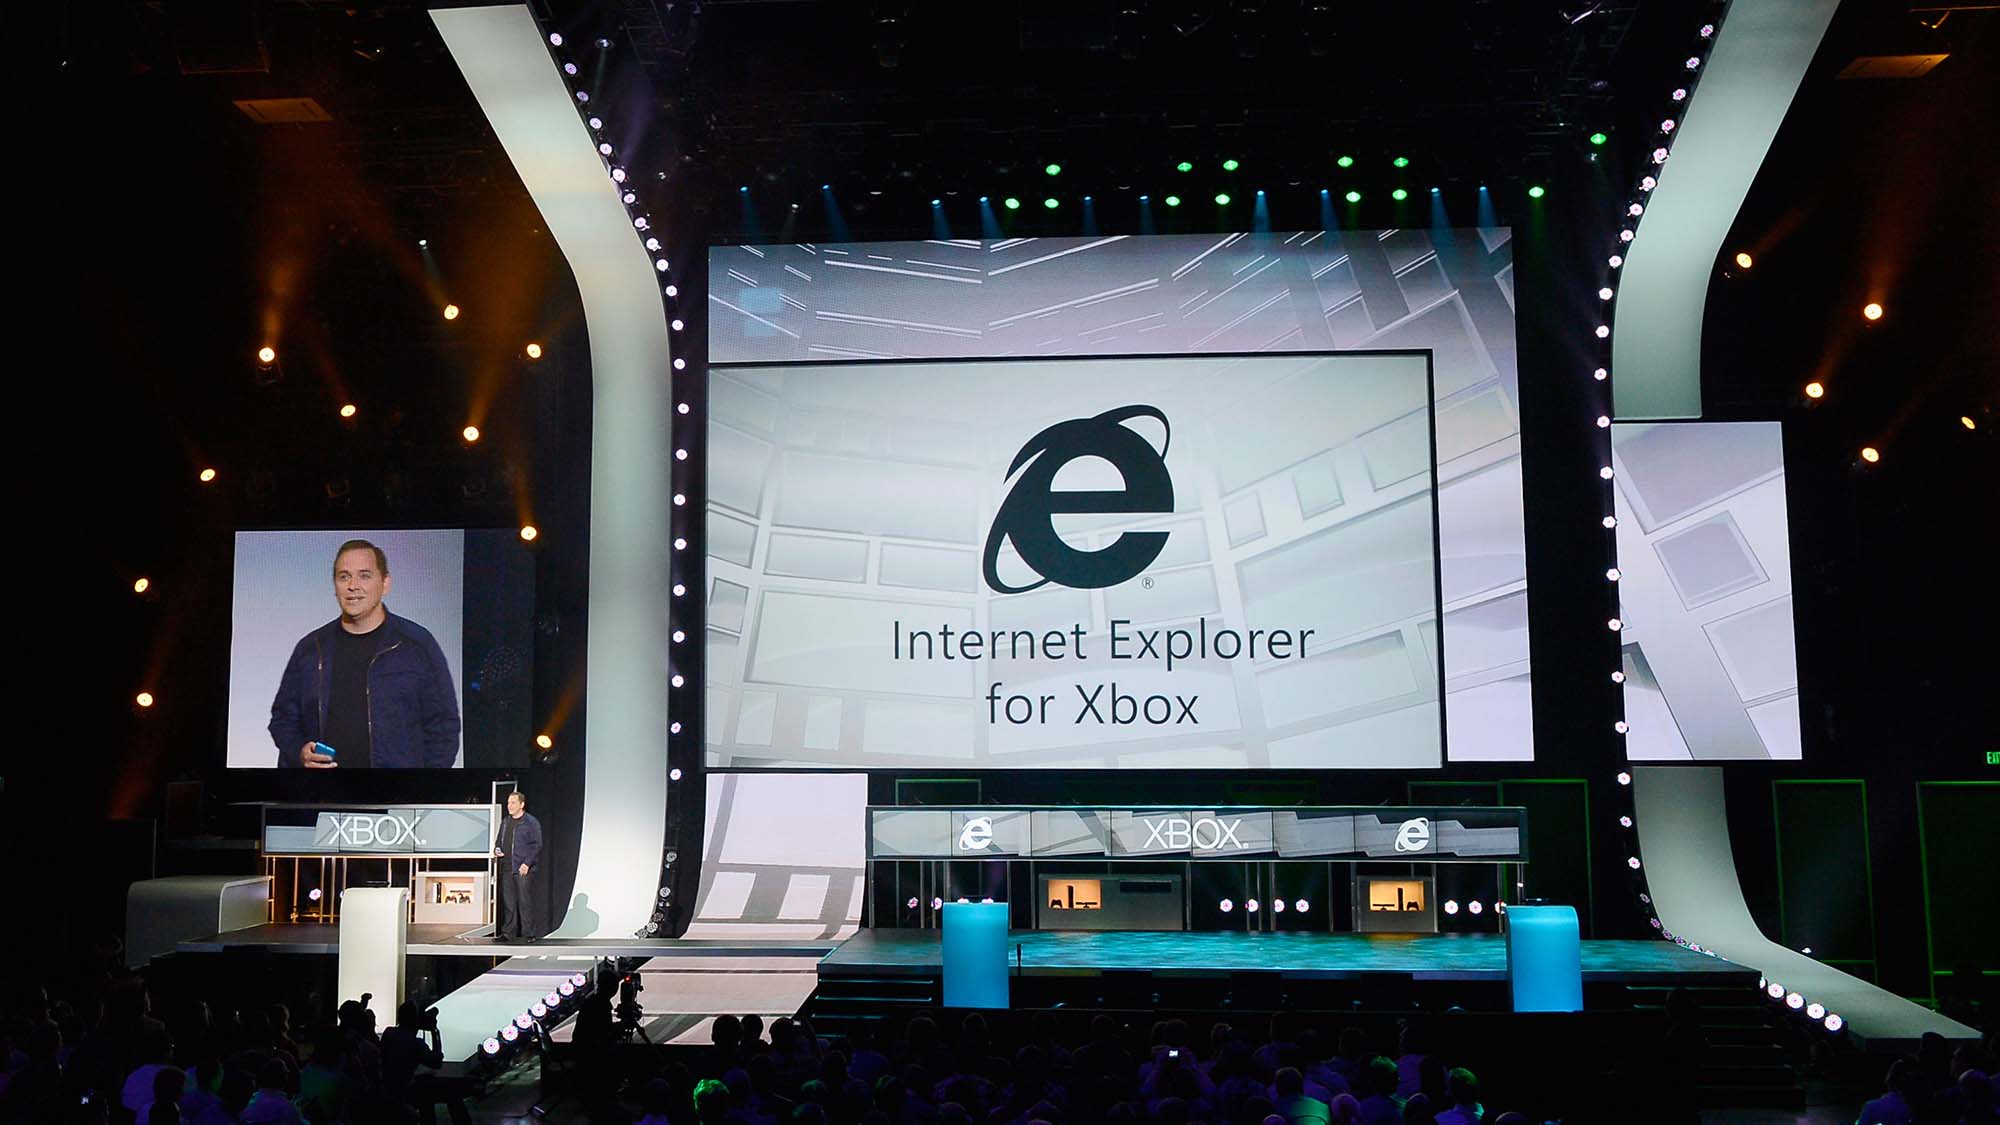 Marc Whitten, cadre Xbox Live, présente Internet Explorer pour Xbox lors de la conférence de presse Microsoft Xbox à l'Electronic Entertainment Expo